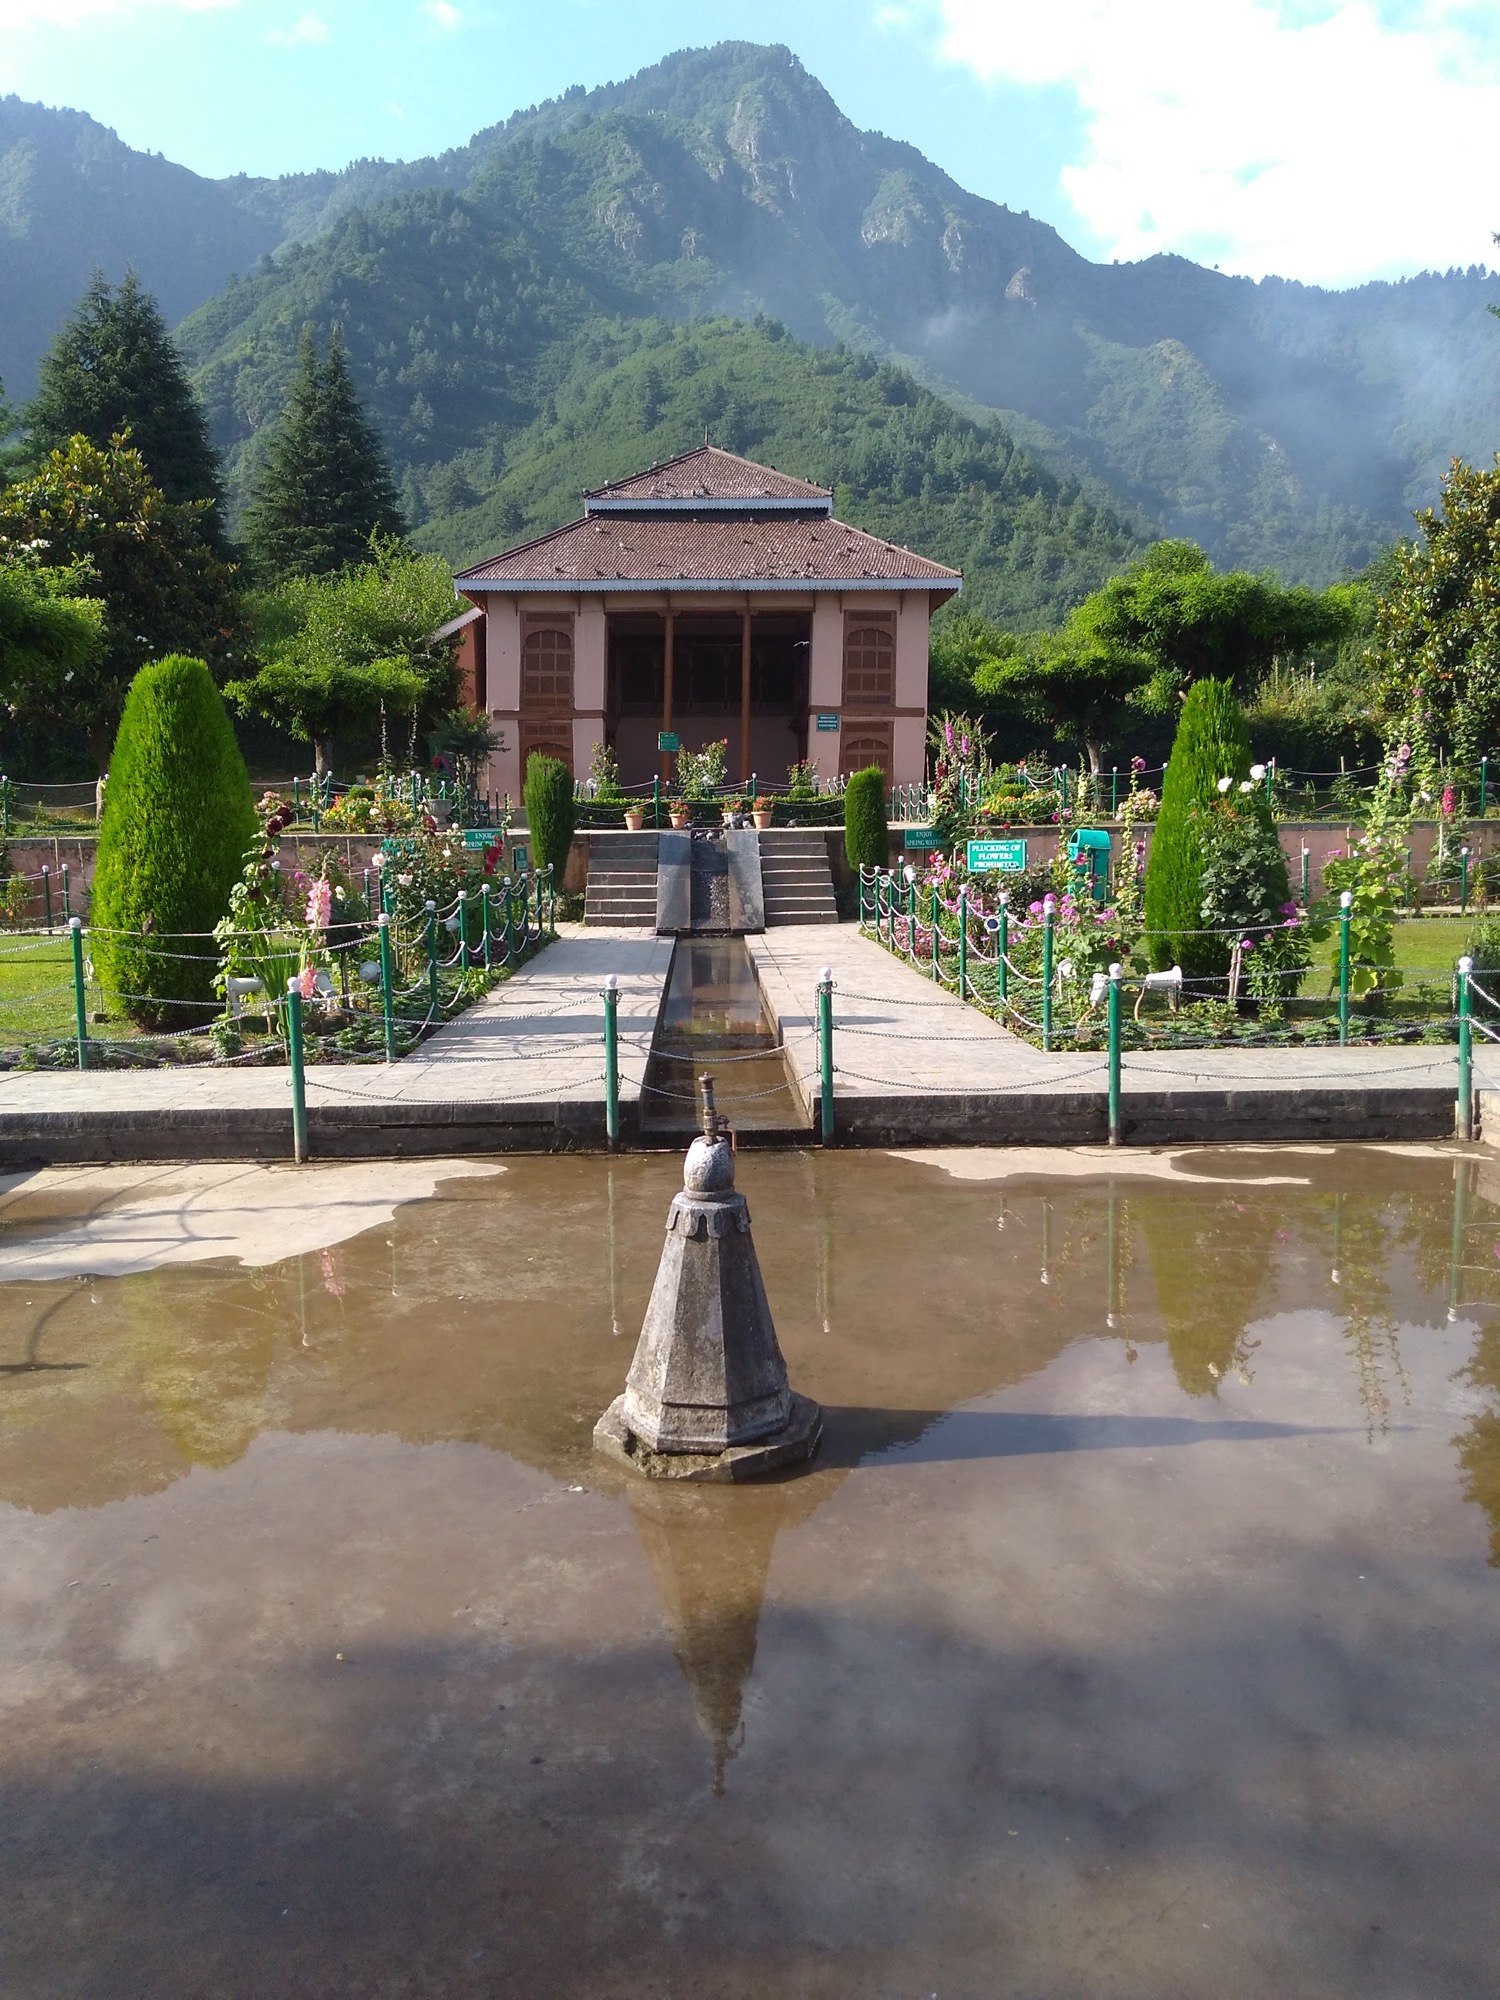 Chashme Shahi at Srinagar